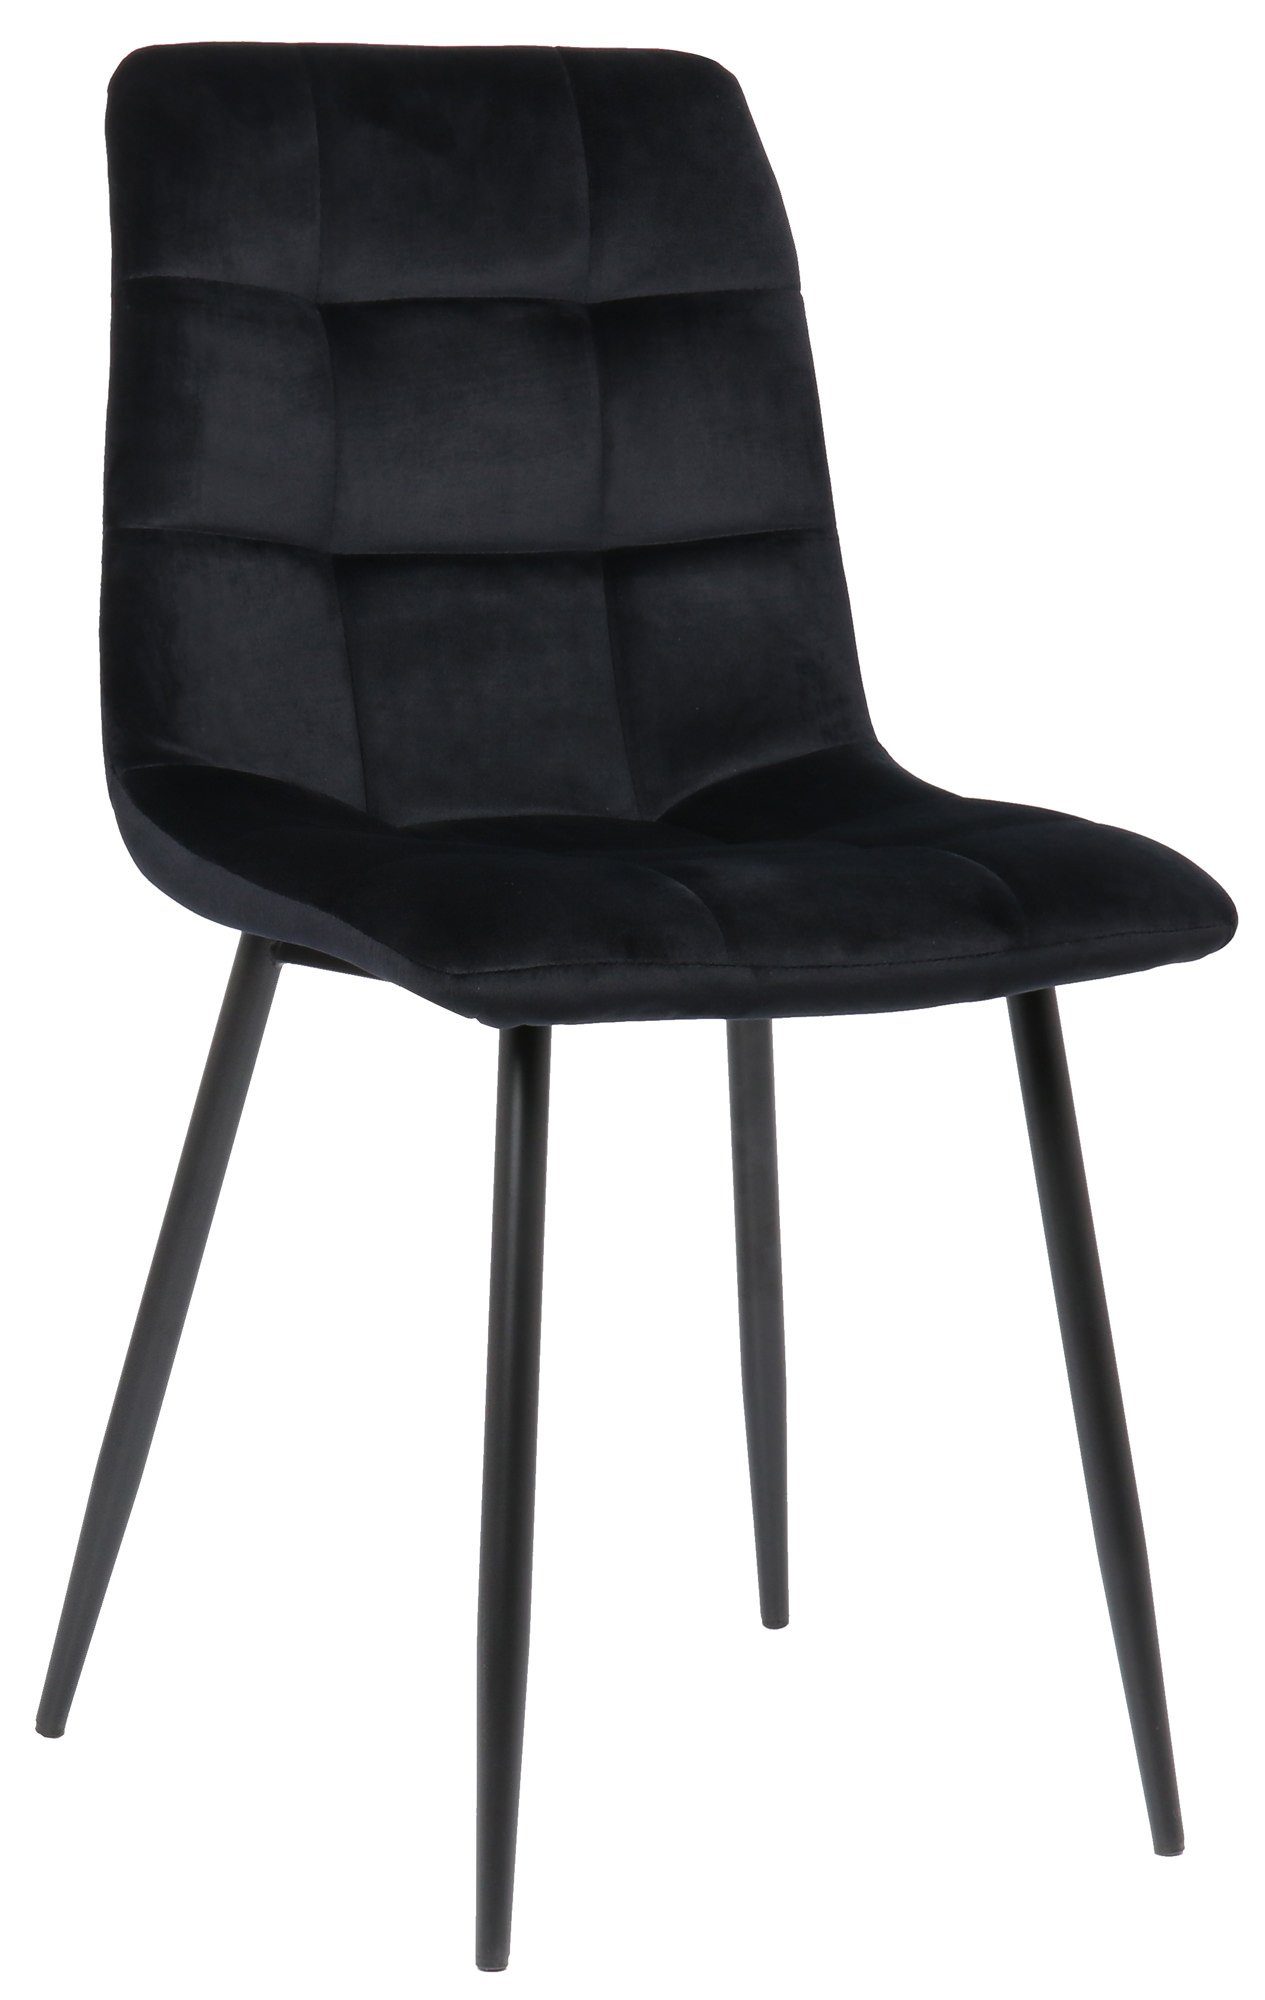 TPFLiving Esszimmerstuhl Till mit hochwertig gepolsterter Sitzfläche - Konferenzstuhl (Küchenstuhl - Esstischstuhl - Wohnzimmerstuhl - Polsterstuhl), Gestell: Metall schwarz - Sitzfläche: Samt schwarz